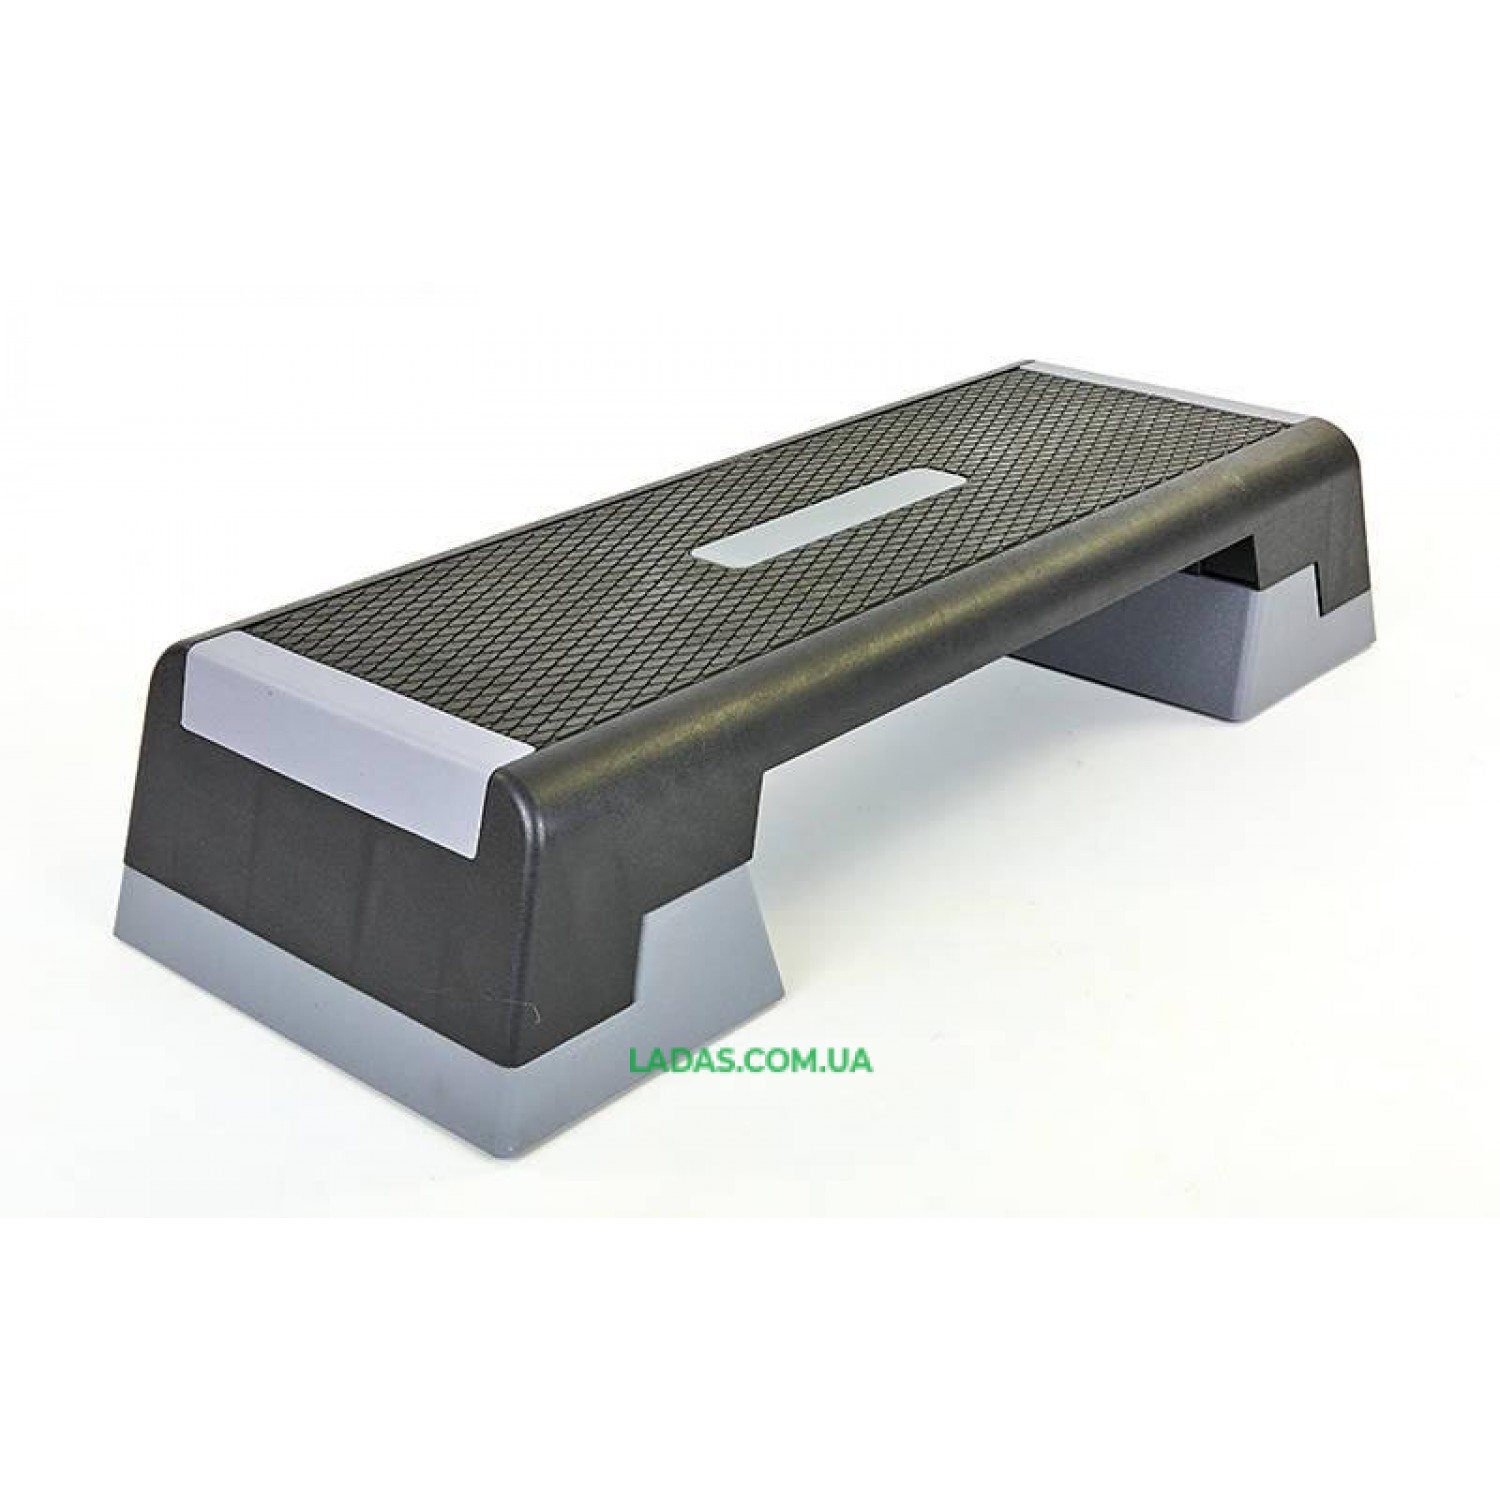 Степ-платформа (пластик, покрытие TPR, р-р 98Lx38Wx15Hсм, черный-серый)